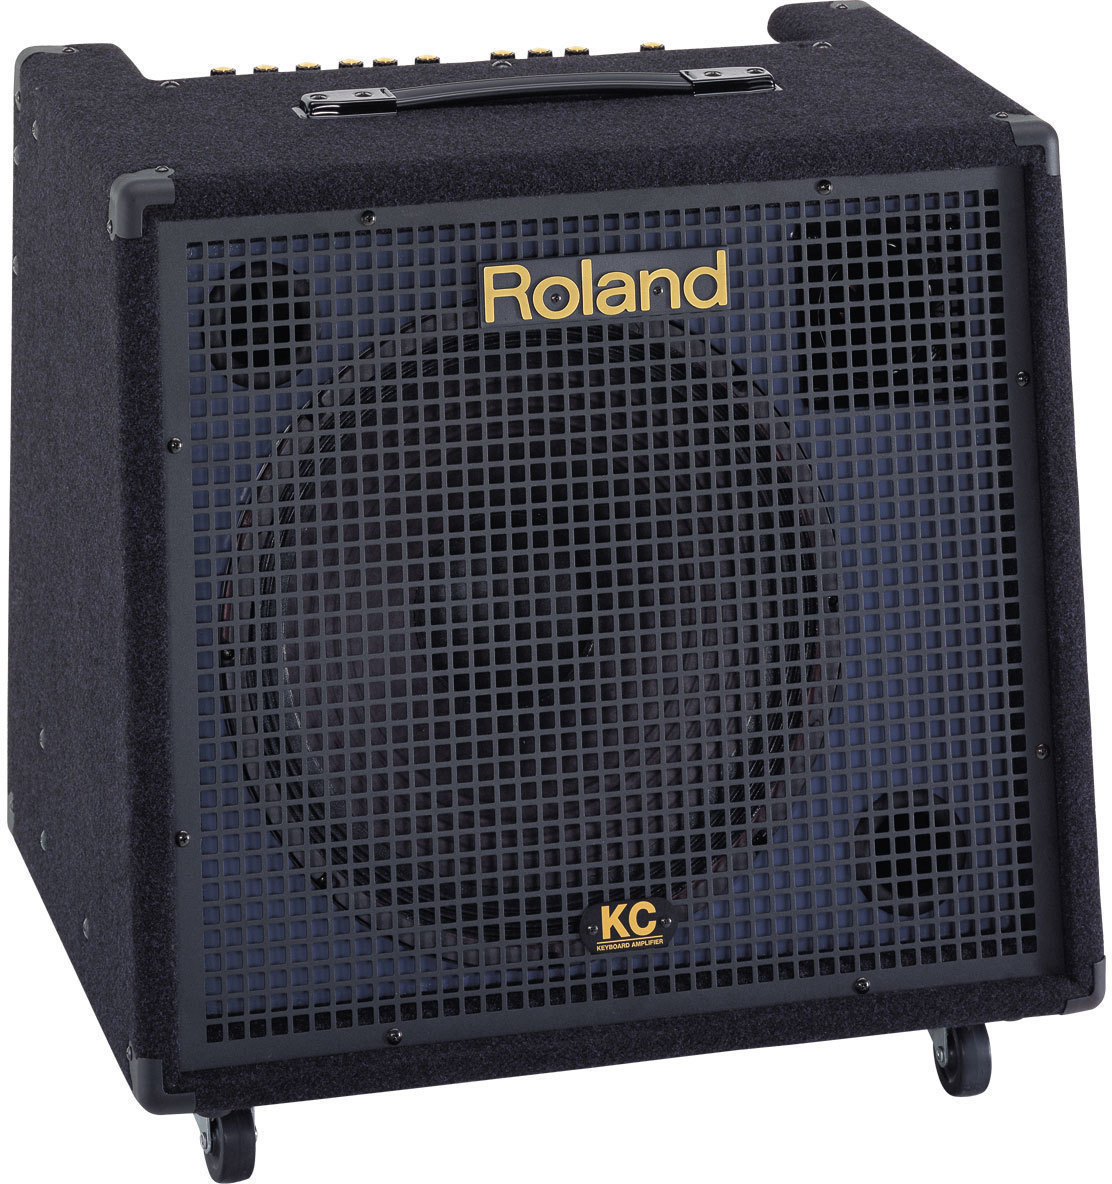 Keyboard-Verstärker Roland KC-550